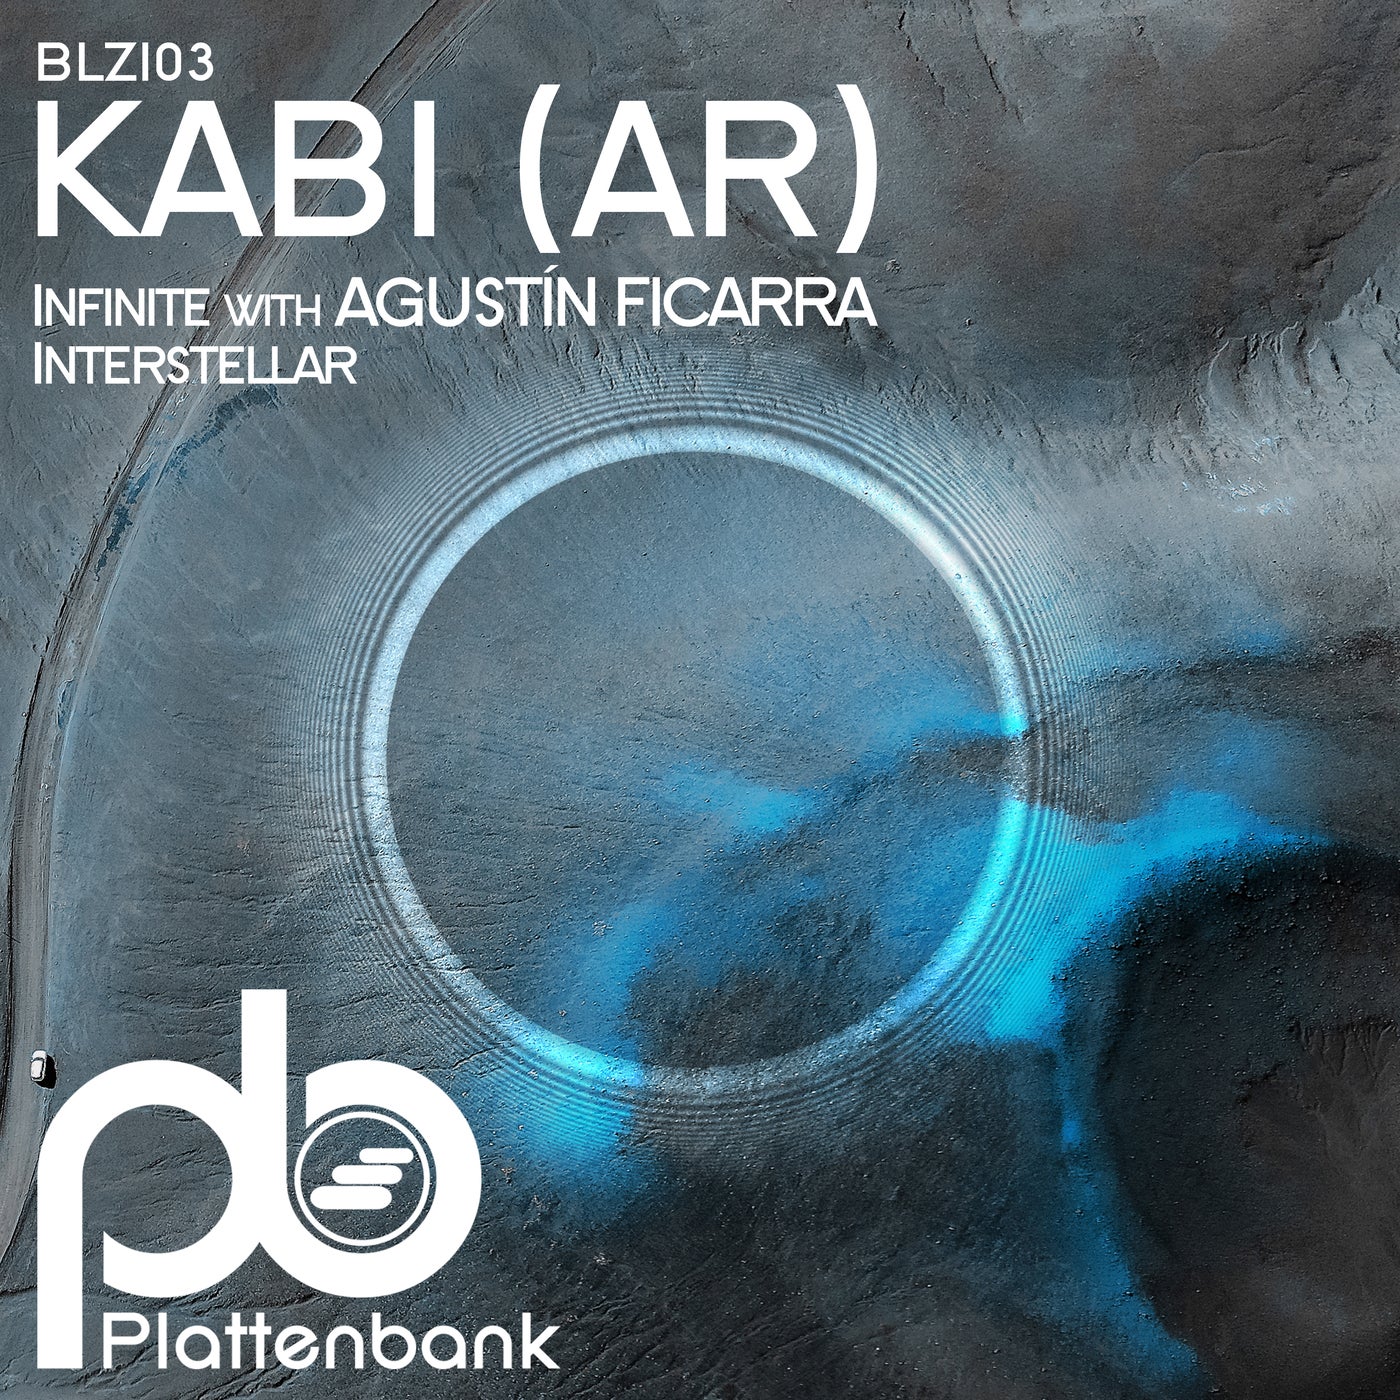 Kabi (ar), Agustín Ficarra - Infinite (original Mix) on Revolution Radio